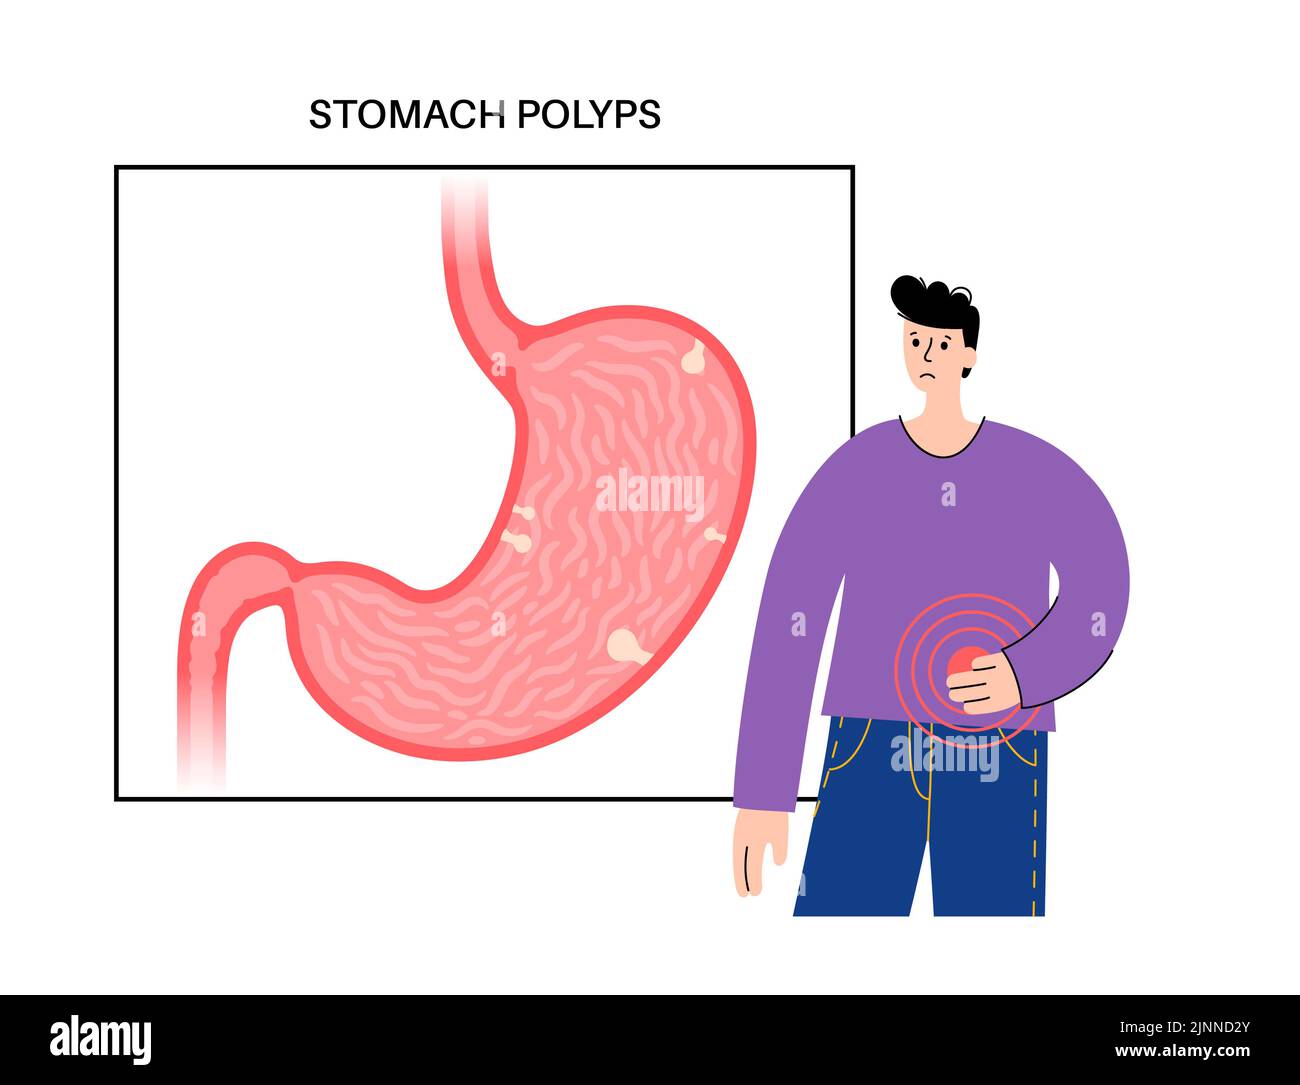 Pólipos estomacales, ilustración. Foto de stock